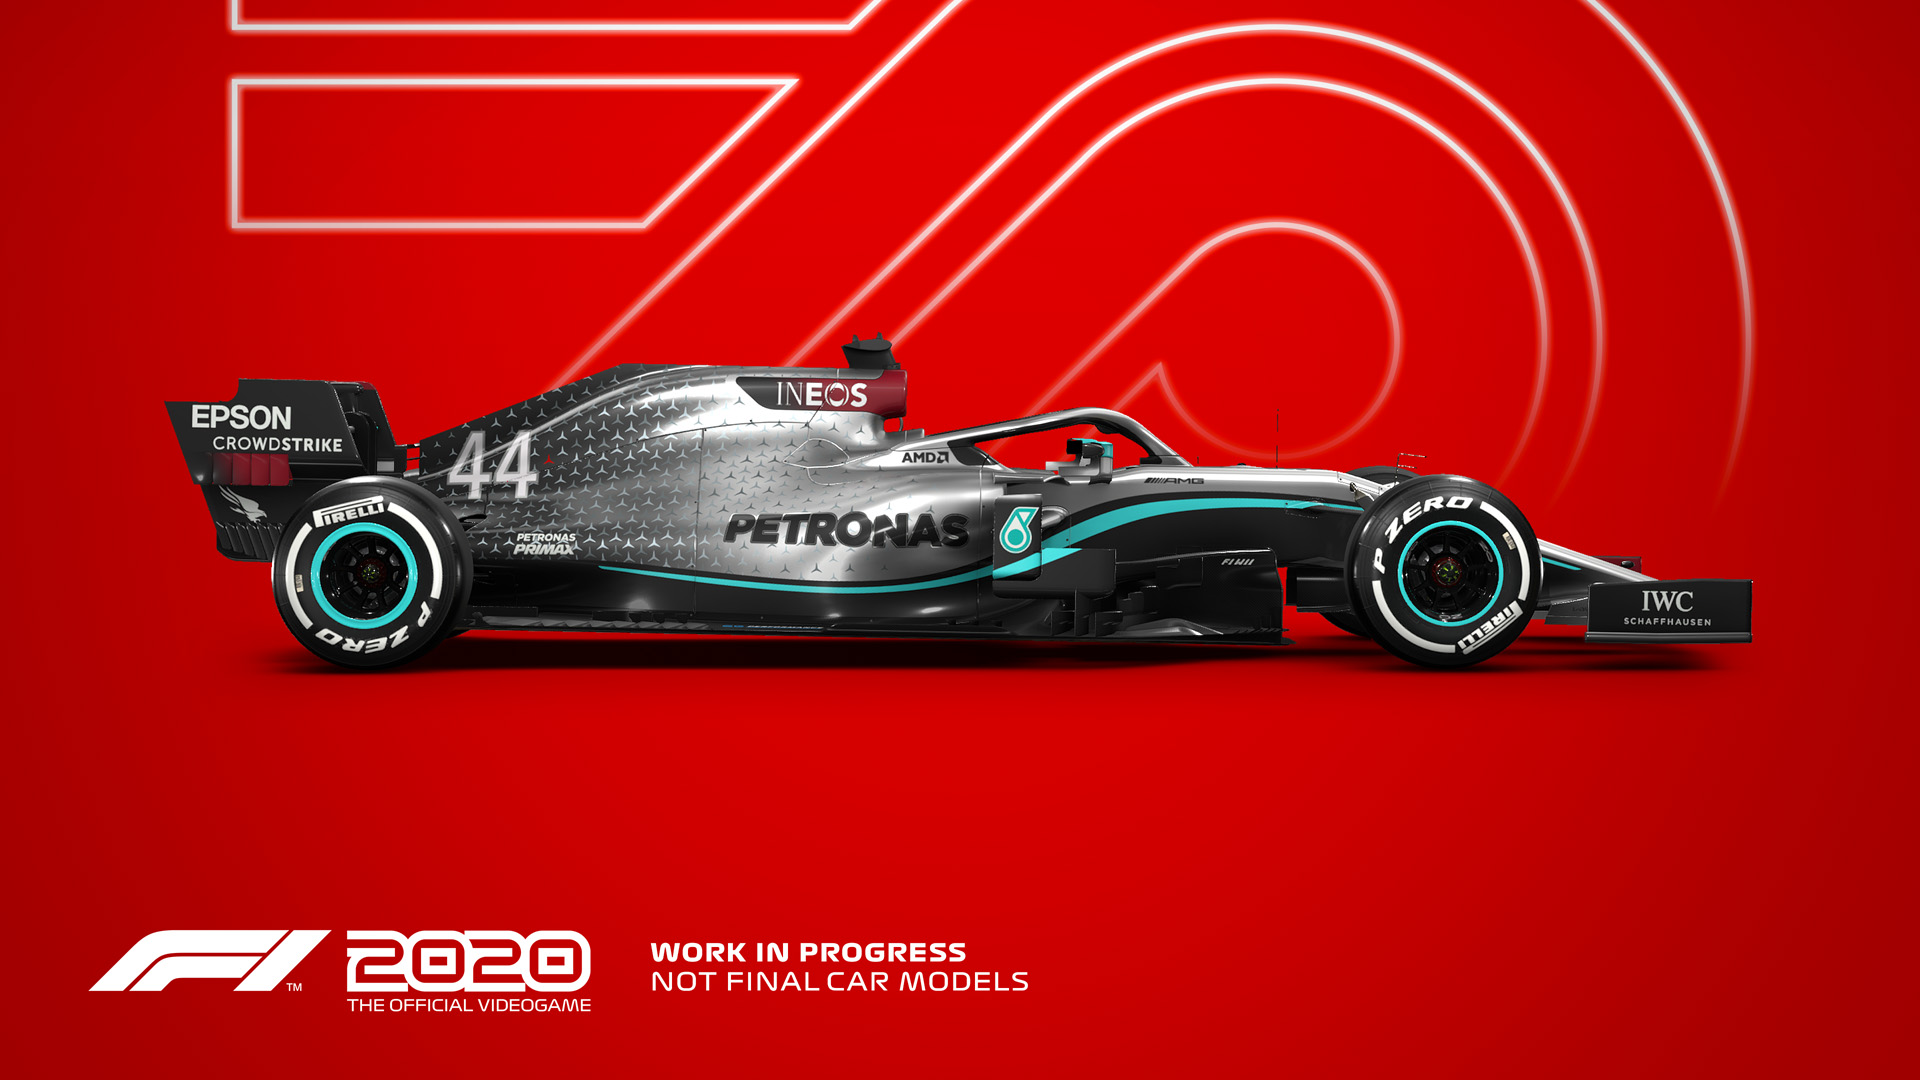 GSE - Game Source Entertainment 家庭用ゲーム 発売元 F1 2020で11番目のチームとなり、レースに赴こう。 F1®70周年を記念し、新サーキット、スプリットスクリーンレーシング機能を追加！ F1® 2020 Schumacher Editionも発売決定！